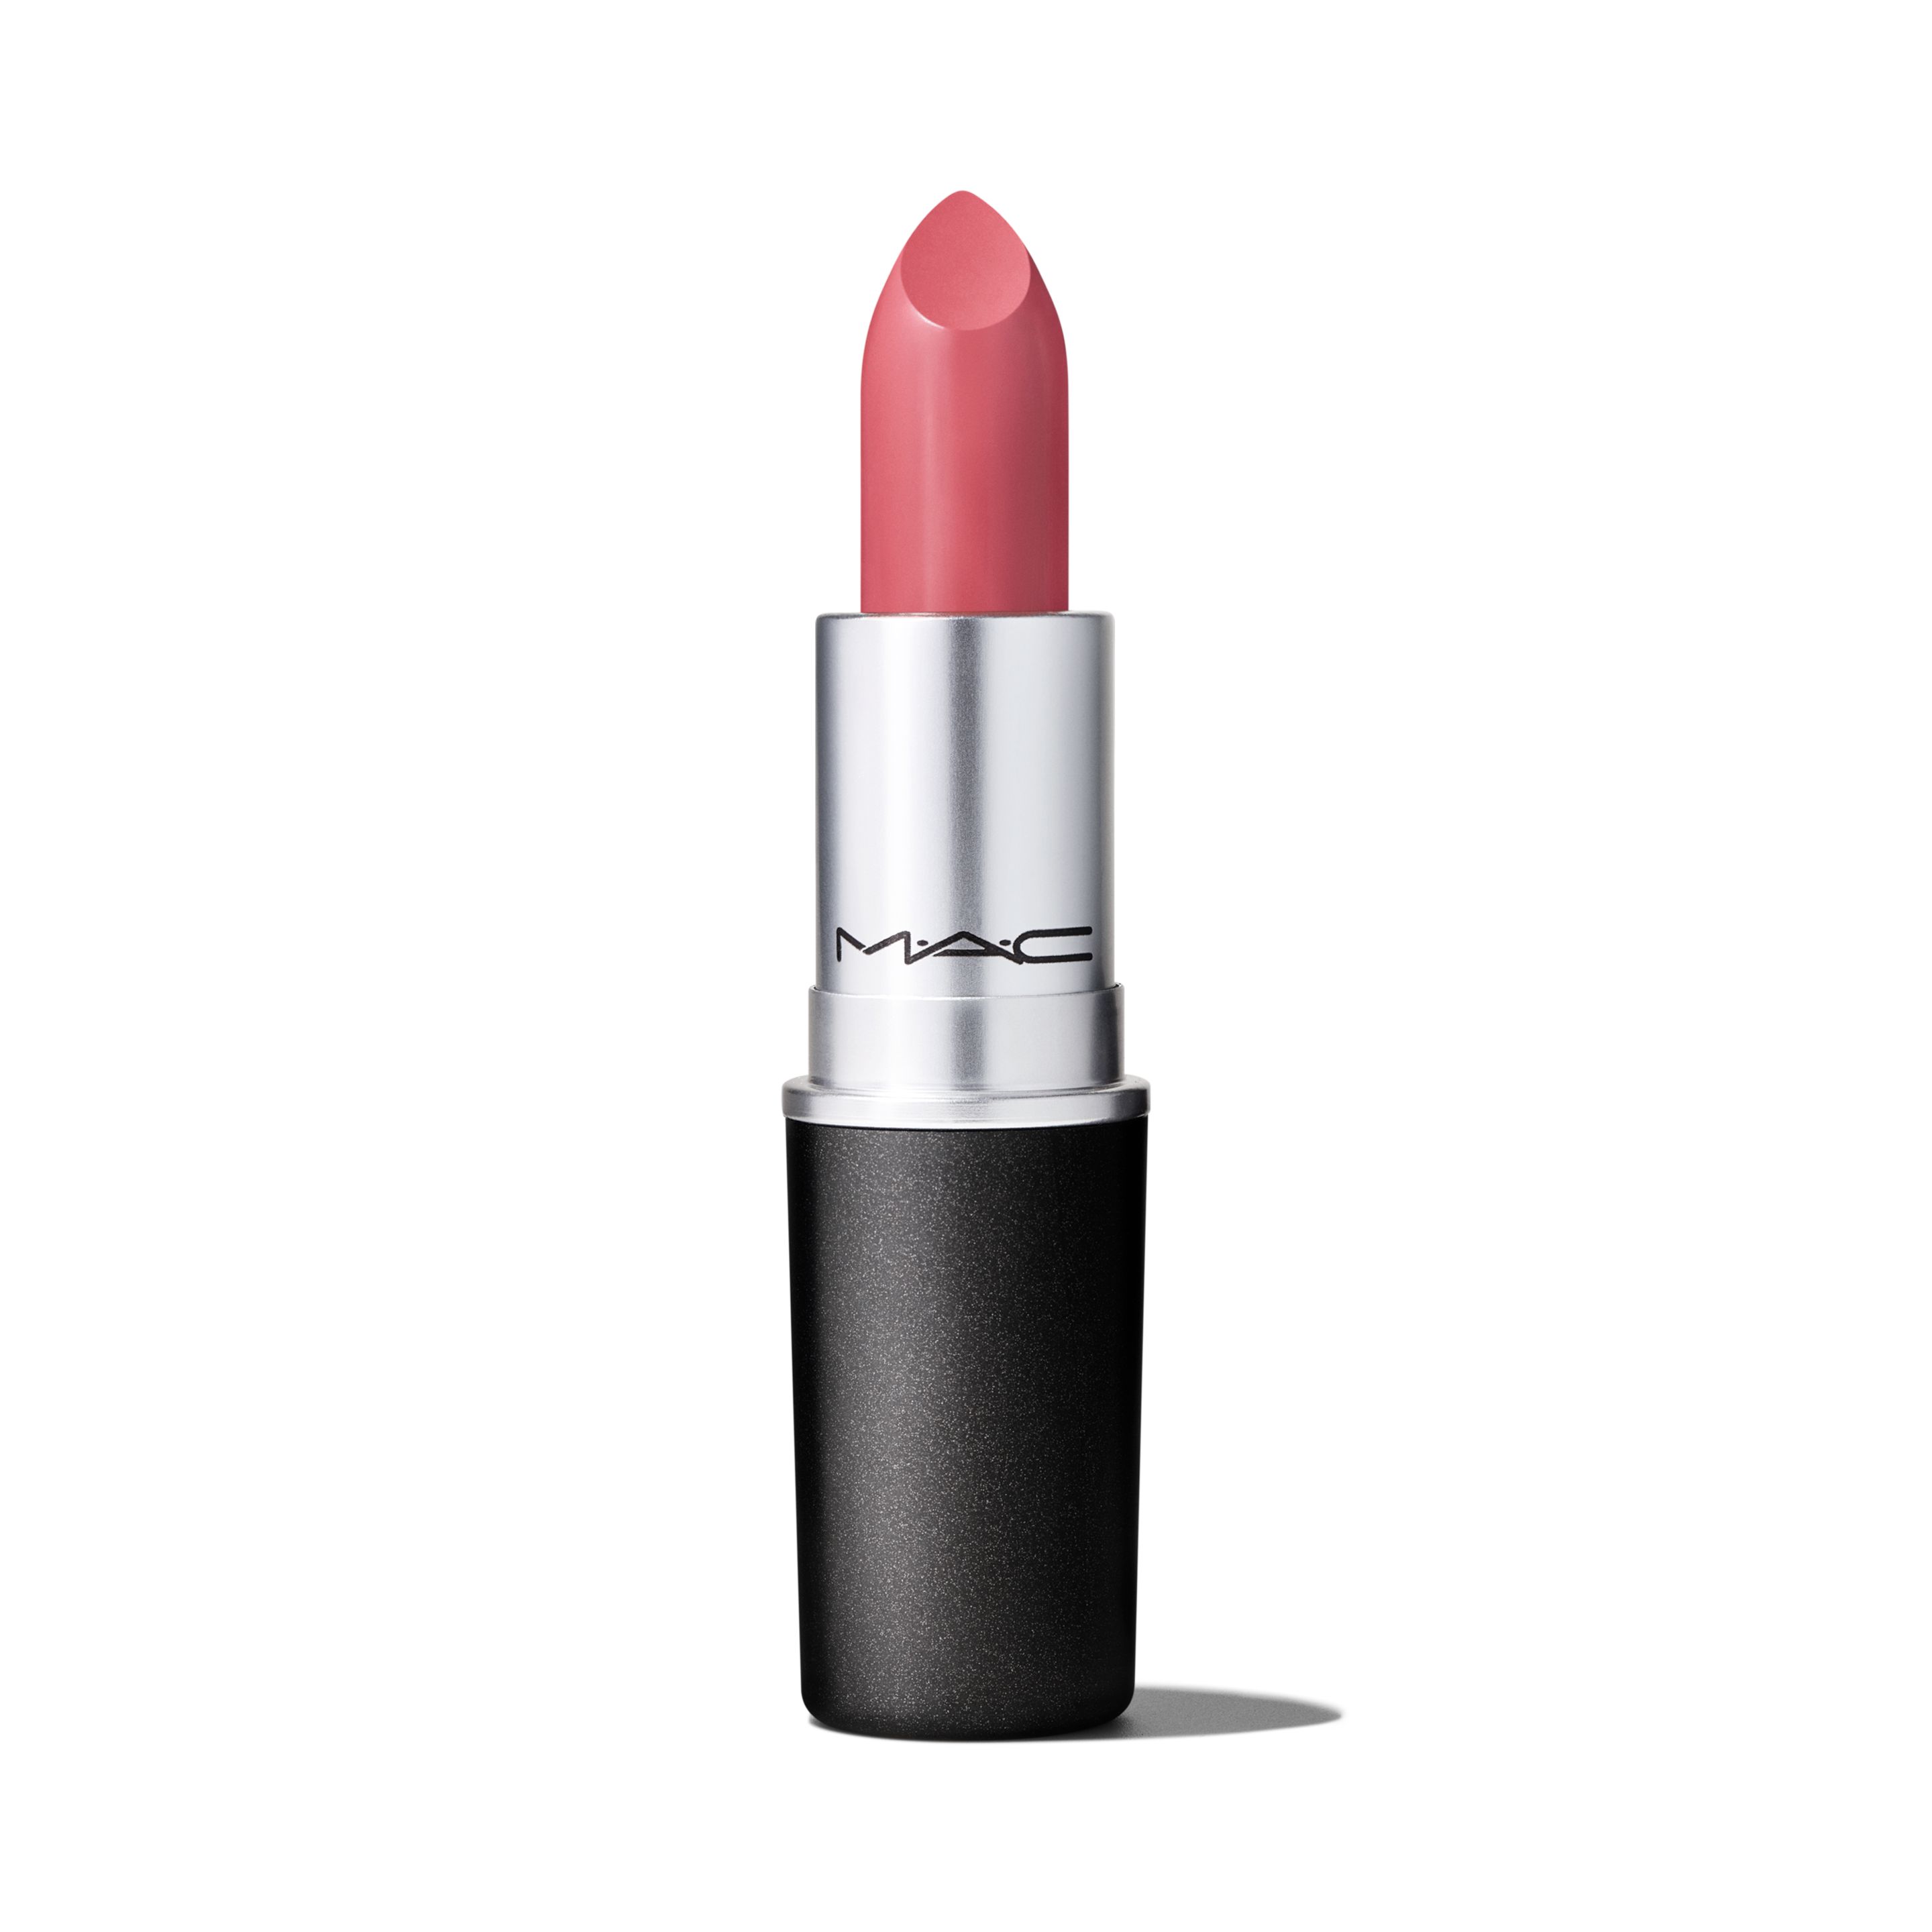 Помада для губ MAC Cosmetics Satin Lipstick кремовая, тон Brave, 3 г помада для губ mac cosmetics satin lipstick кремовая тон faux 3 г